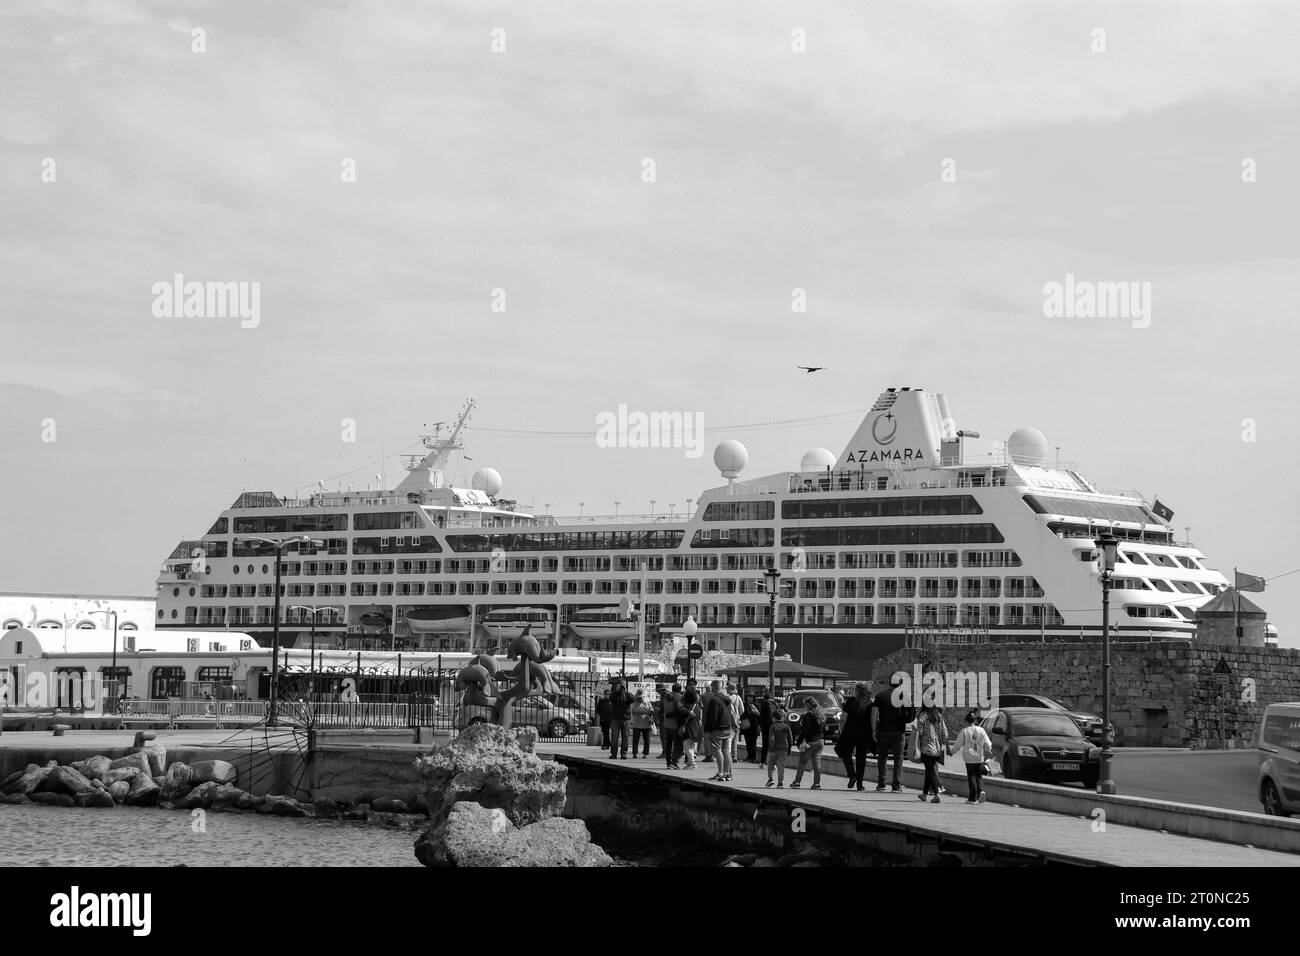 Navire de croisière Azamara Pursuit amarré au port de Rhodes en noir et blanc Banque D'Images